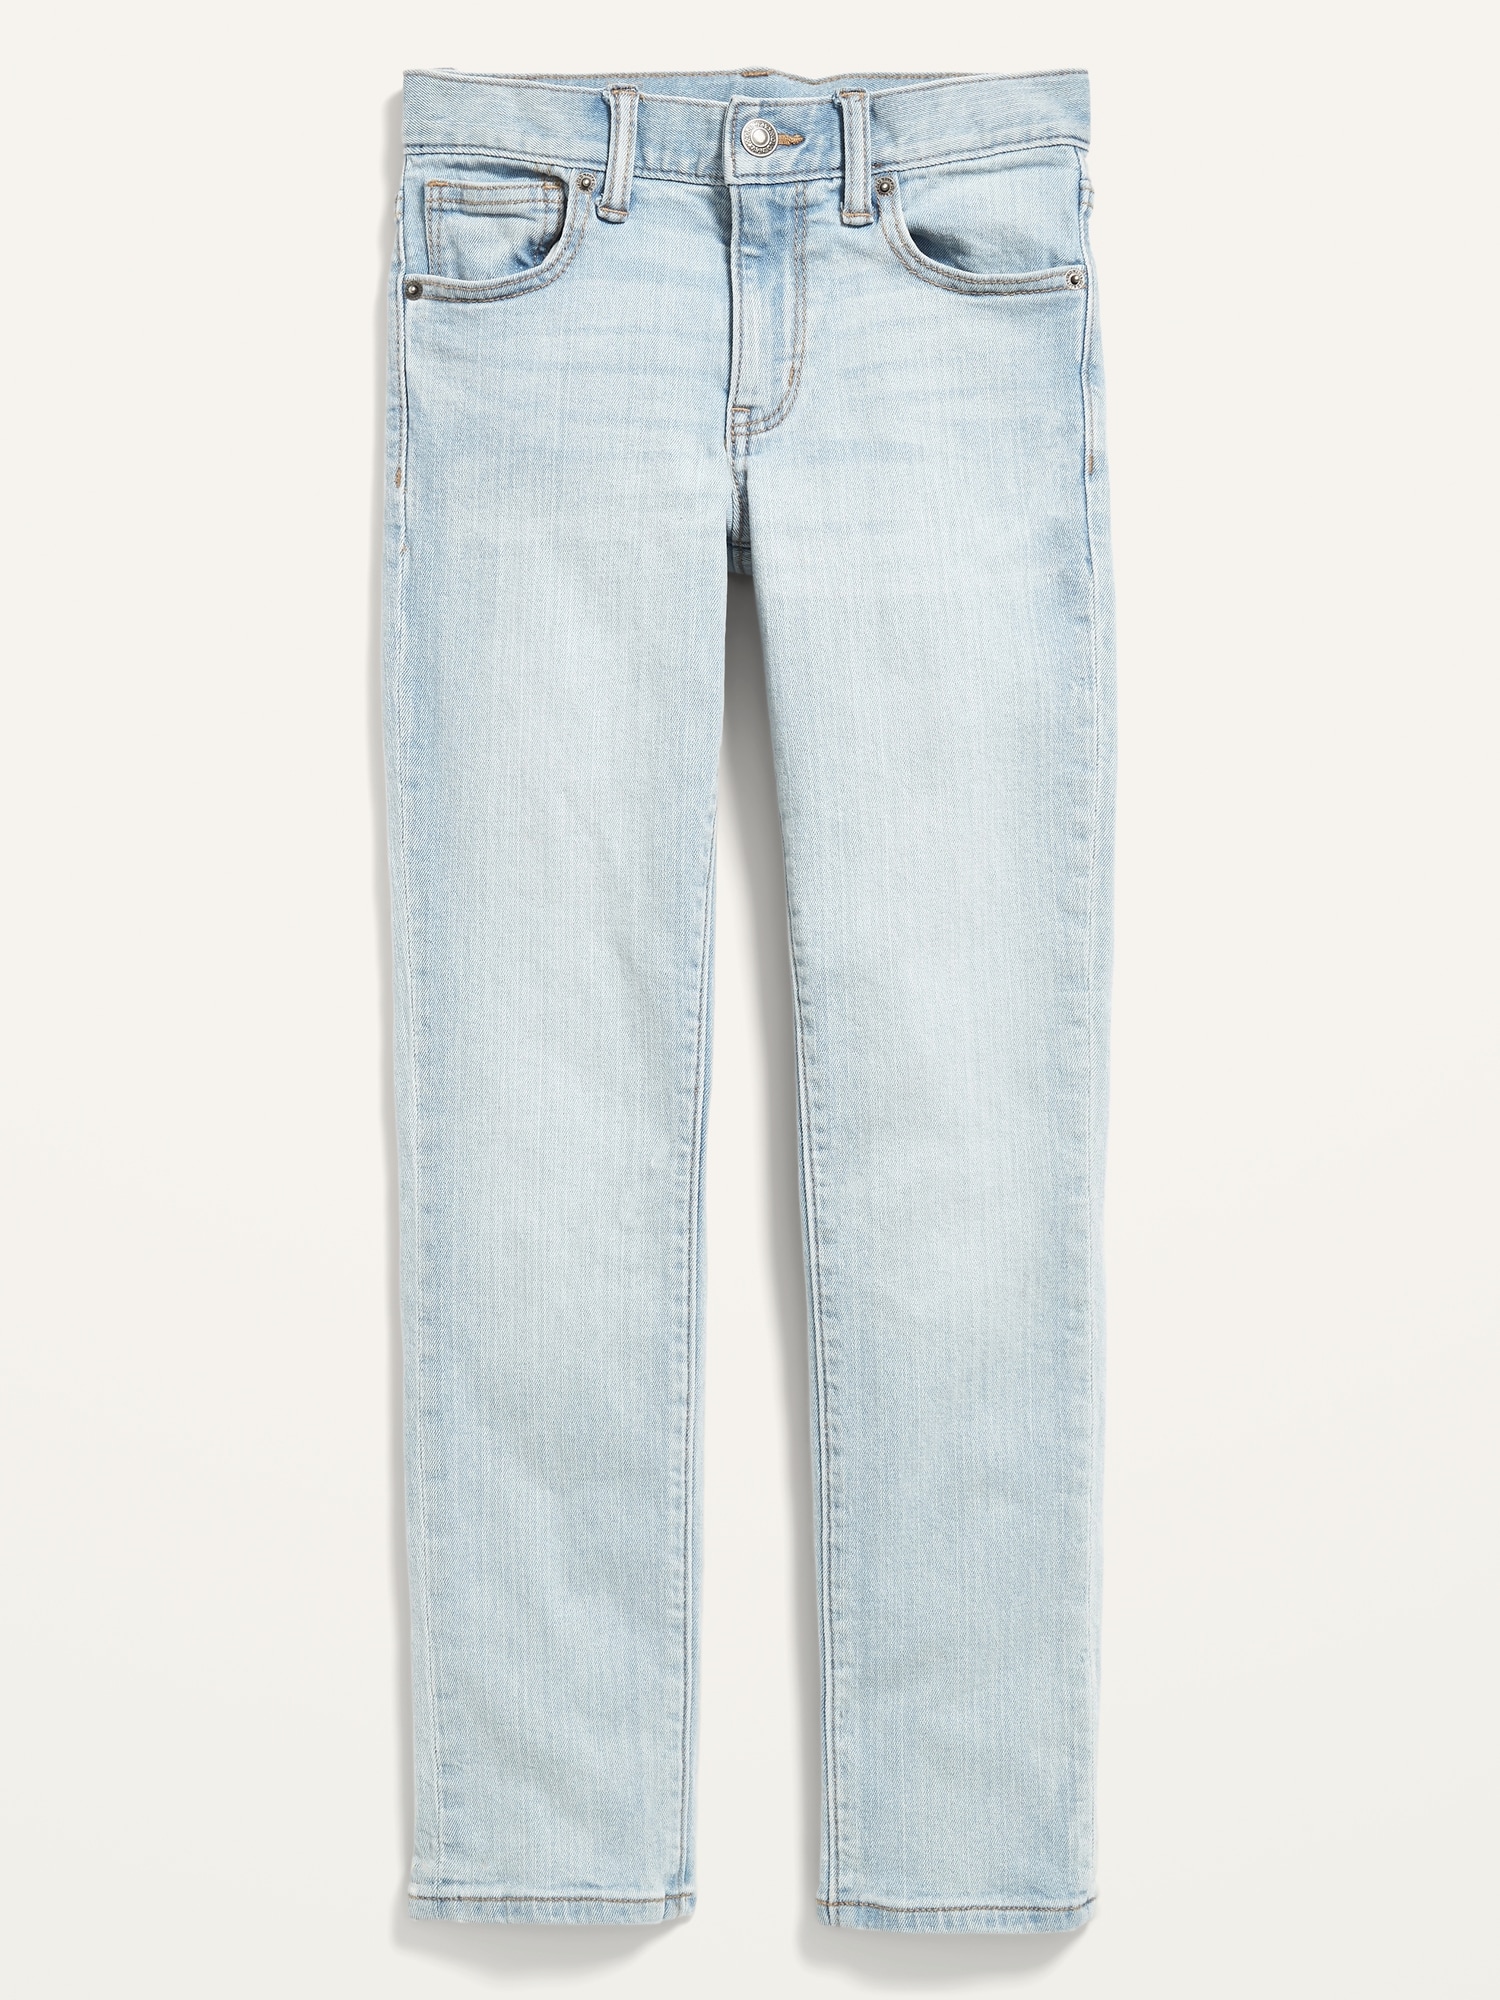 Old Navy - Pantalon Fille 12 ans Jeans Printemps/Été22